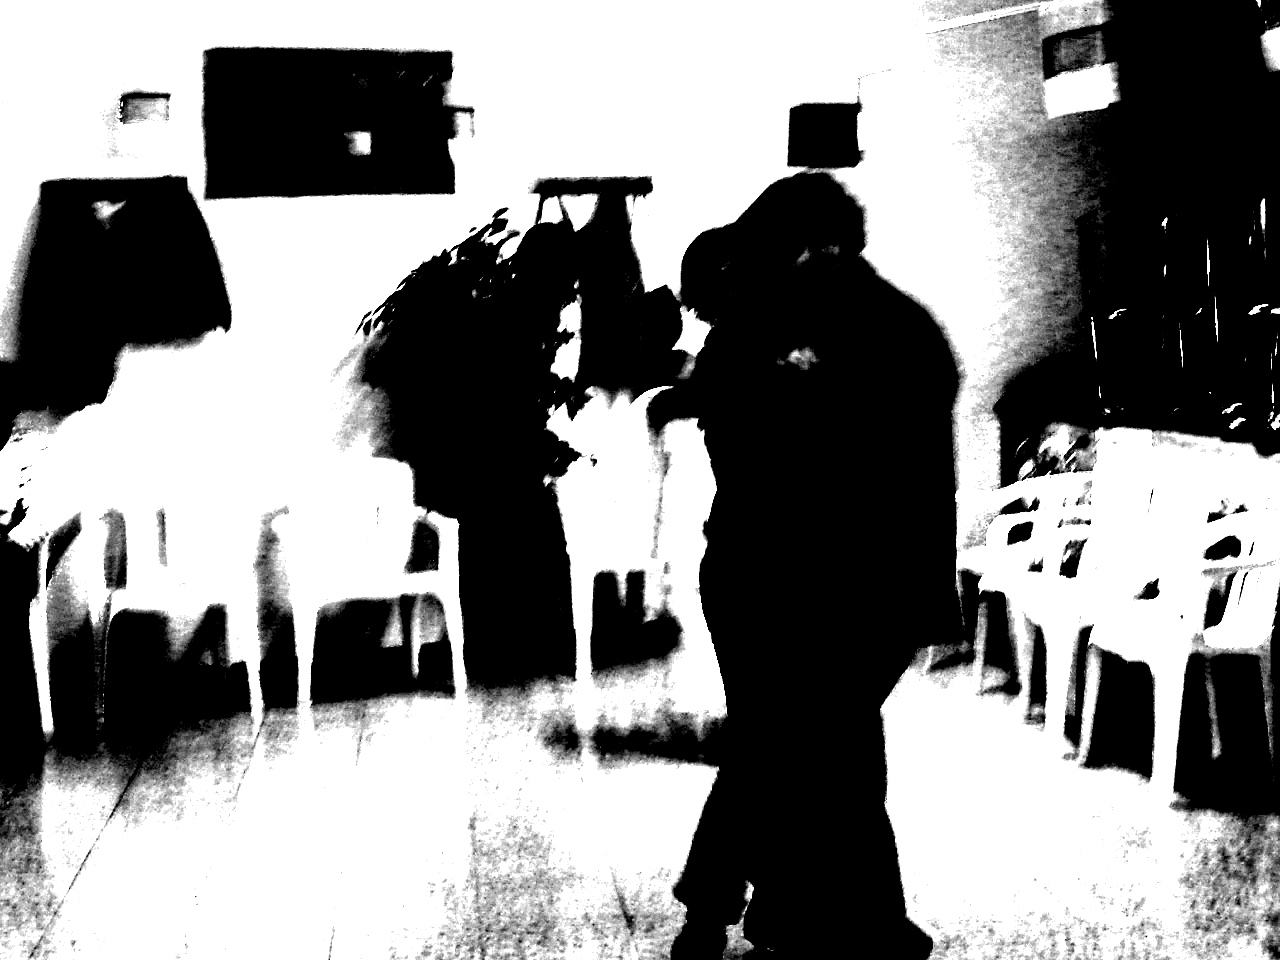 Baile tirando a oscuro entre tanto blanco. Perteneciente a la Serie fotográfica Espasmos de Olmo Z. realizada en fecha desconocida.